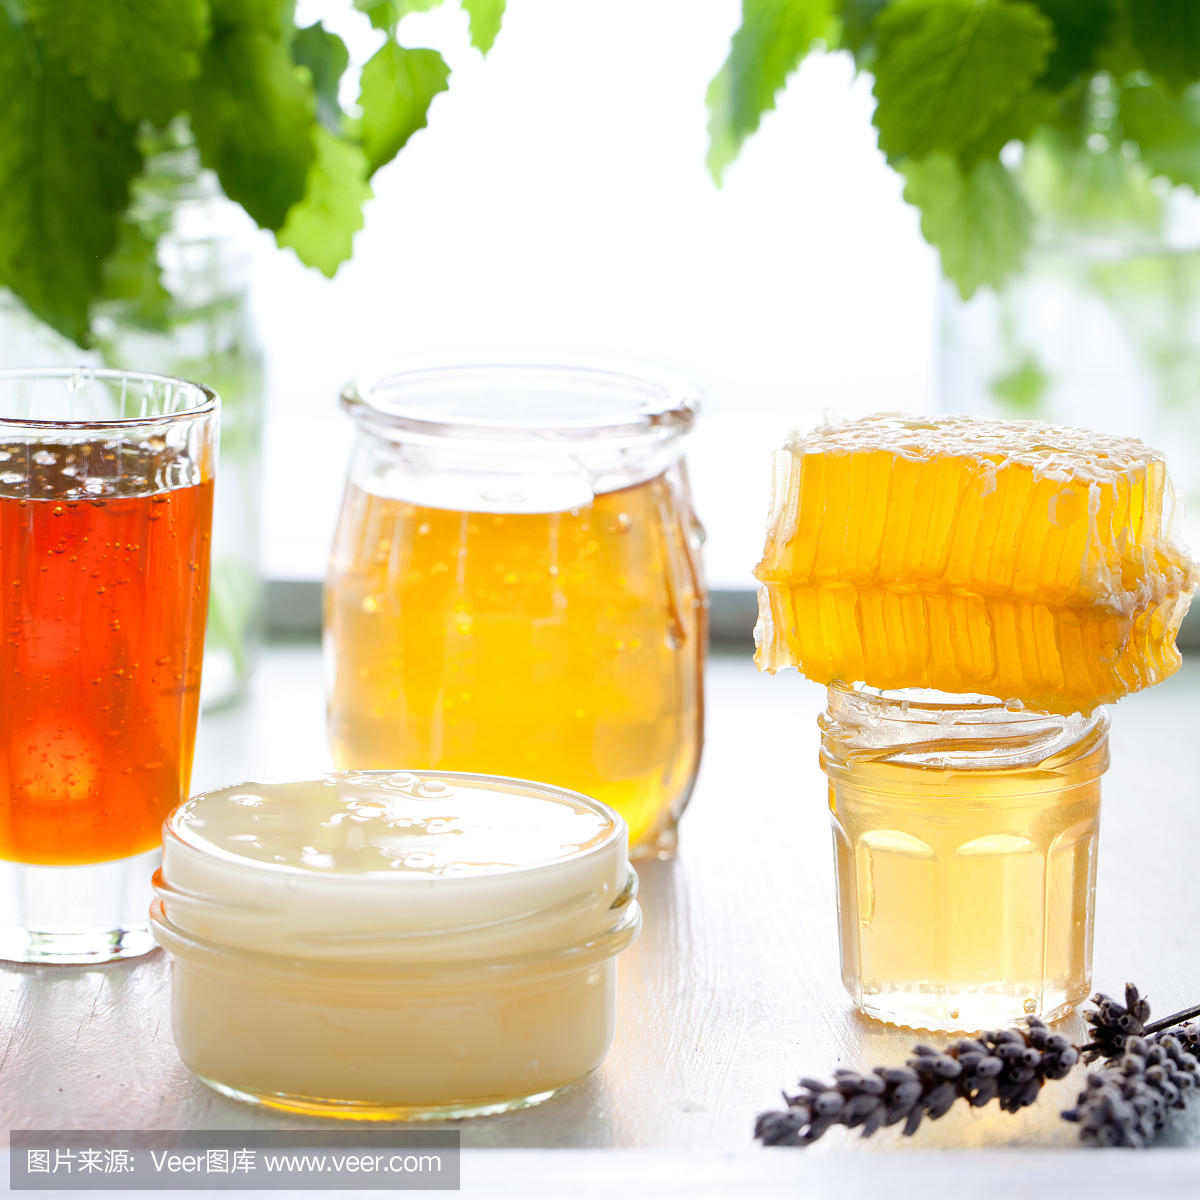 蜂蜜种类繁多,蜂窝状在玻璃瓶中。